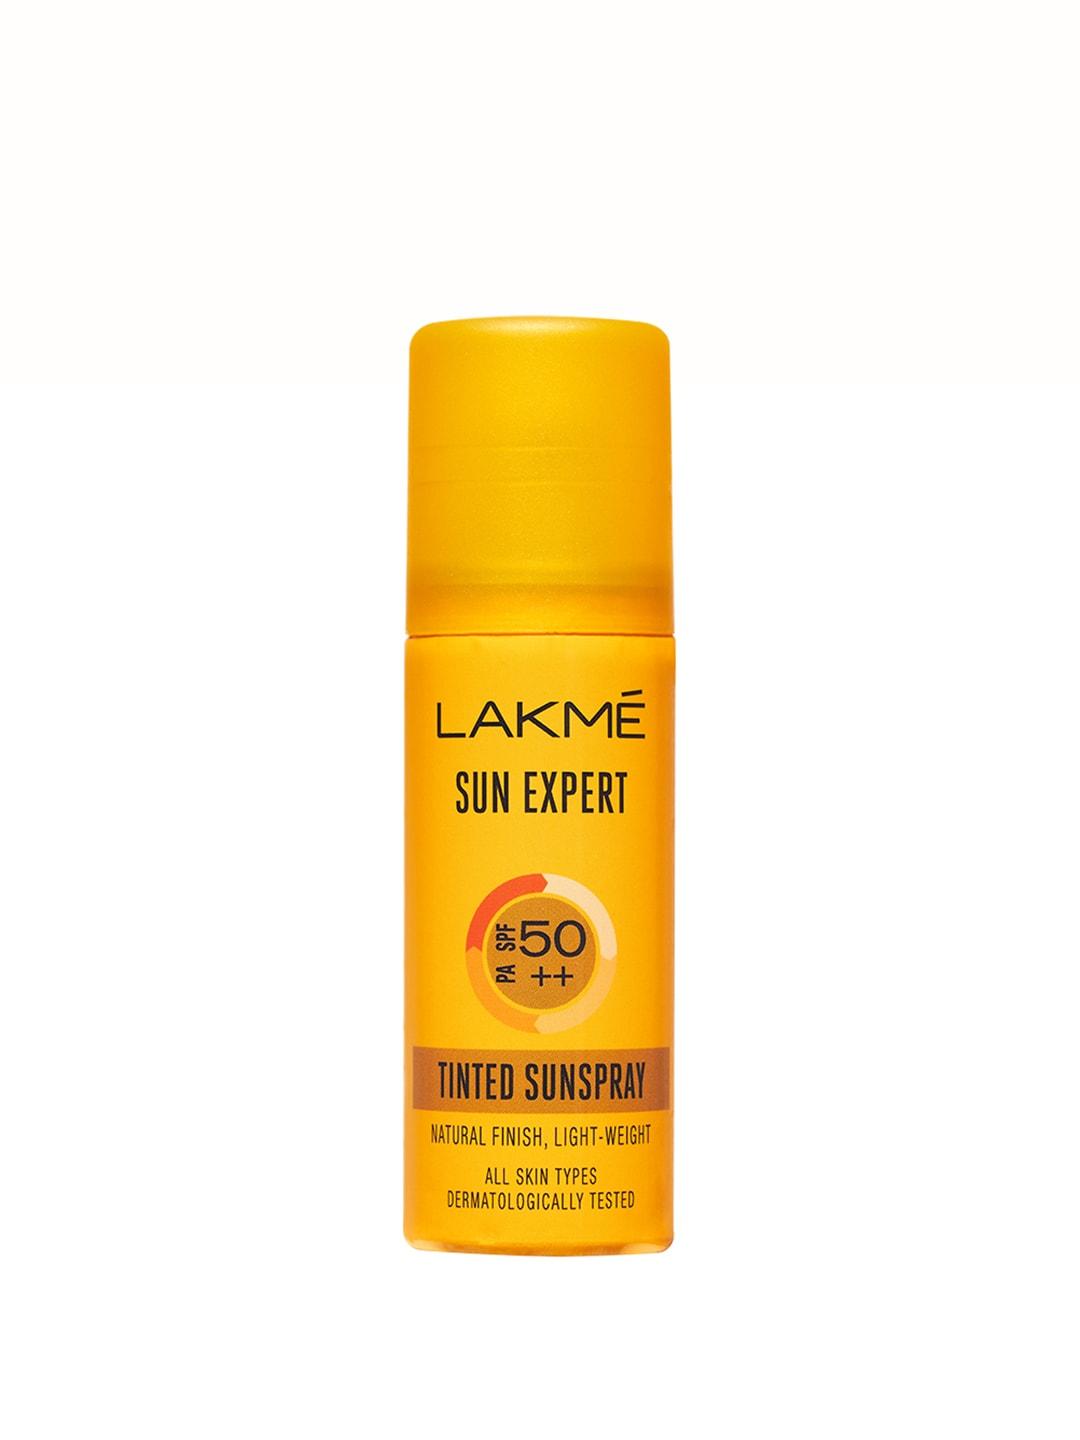 Lakme Sun Expert Ultra Matte SPF50 Natural Finish Lightweight Tinted Sunspray - 50 ml